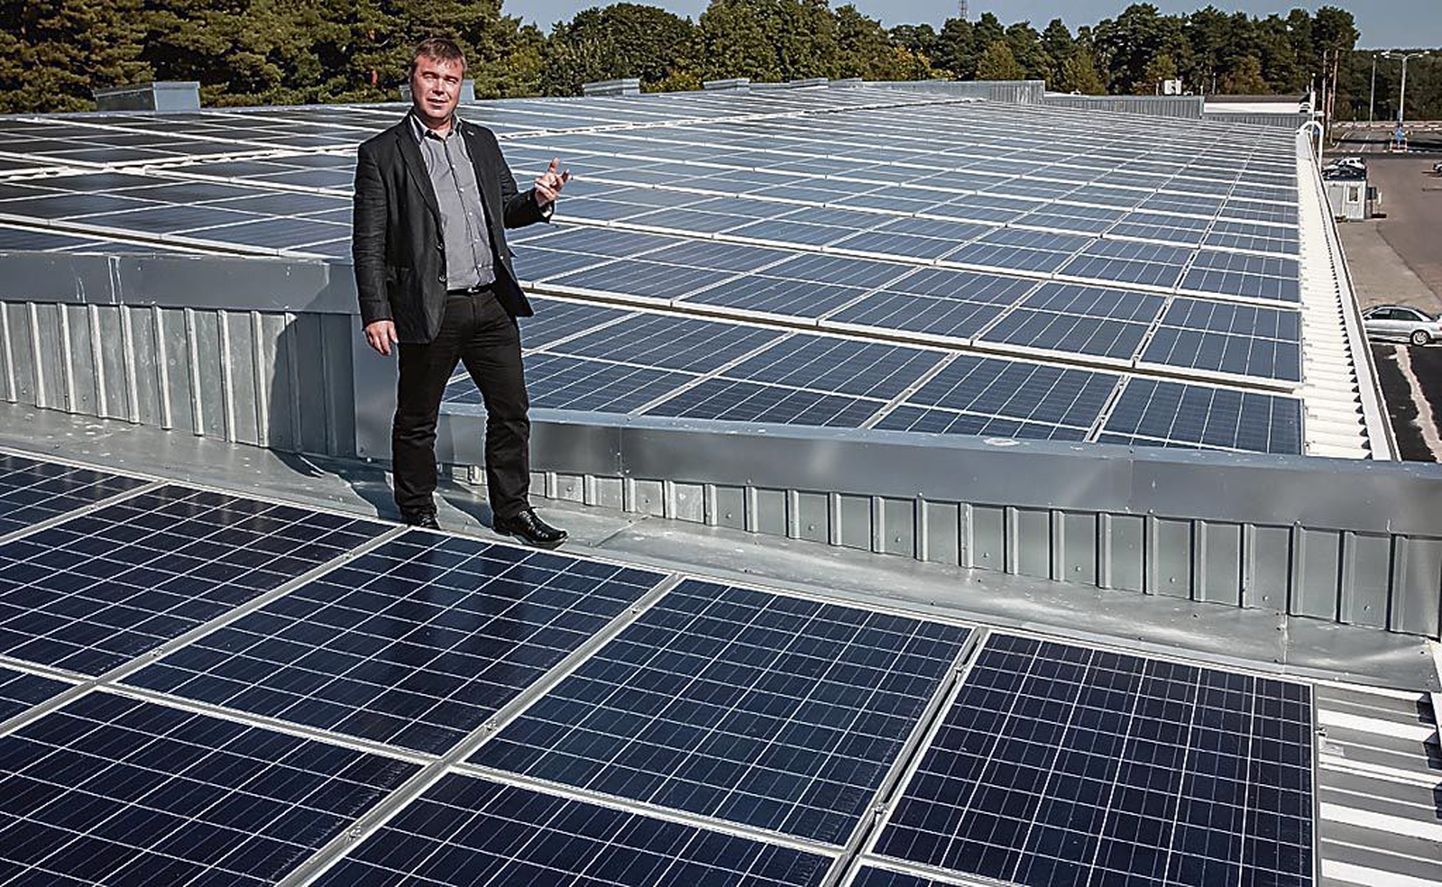 Ago Kalmeri tellitud 705 päikesepaneeli katavad ligikaudu 1300 ruutmeetri suuruse katusepinna.